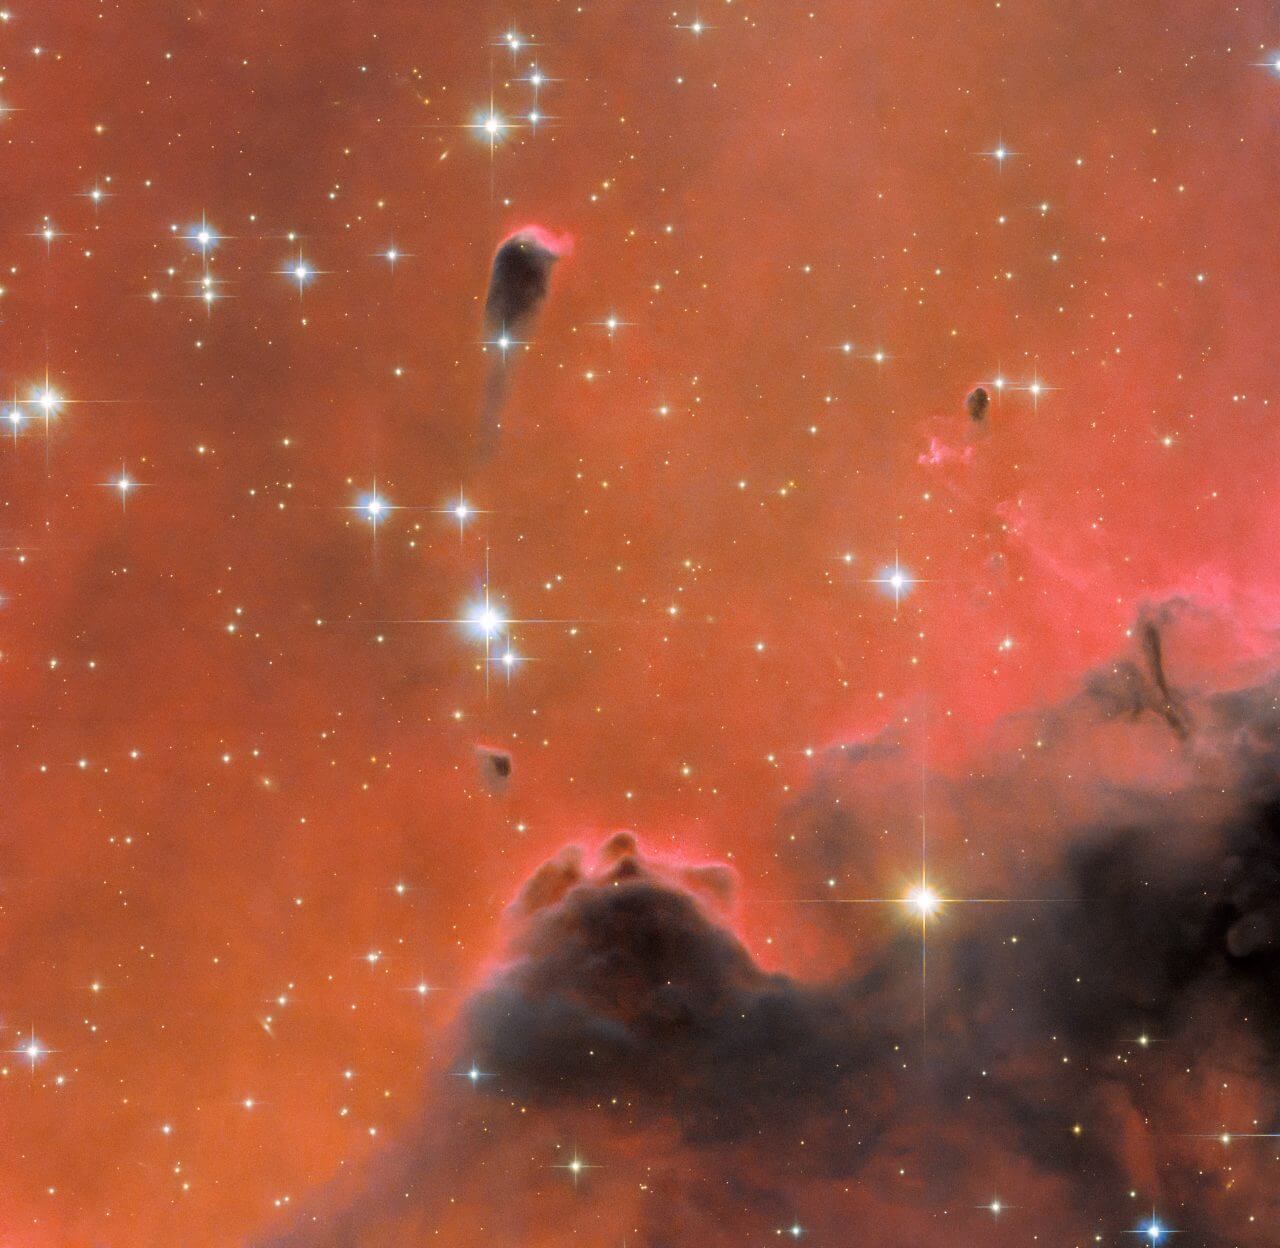 輝線星雲「ウェスターハウト5」に浮かぶfrEGG